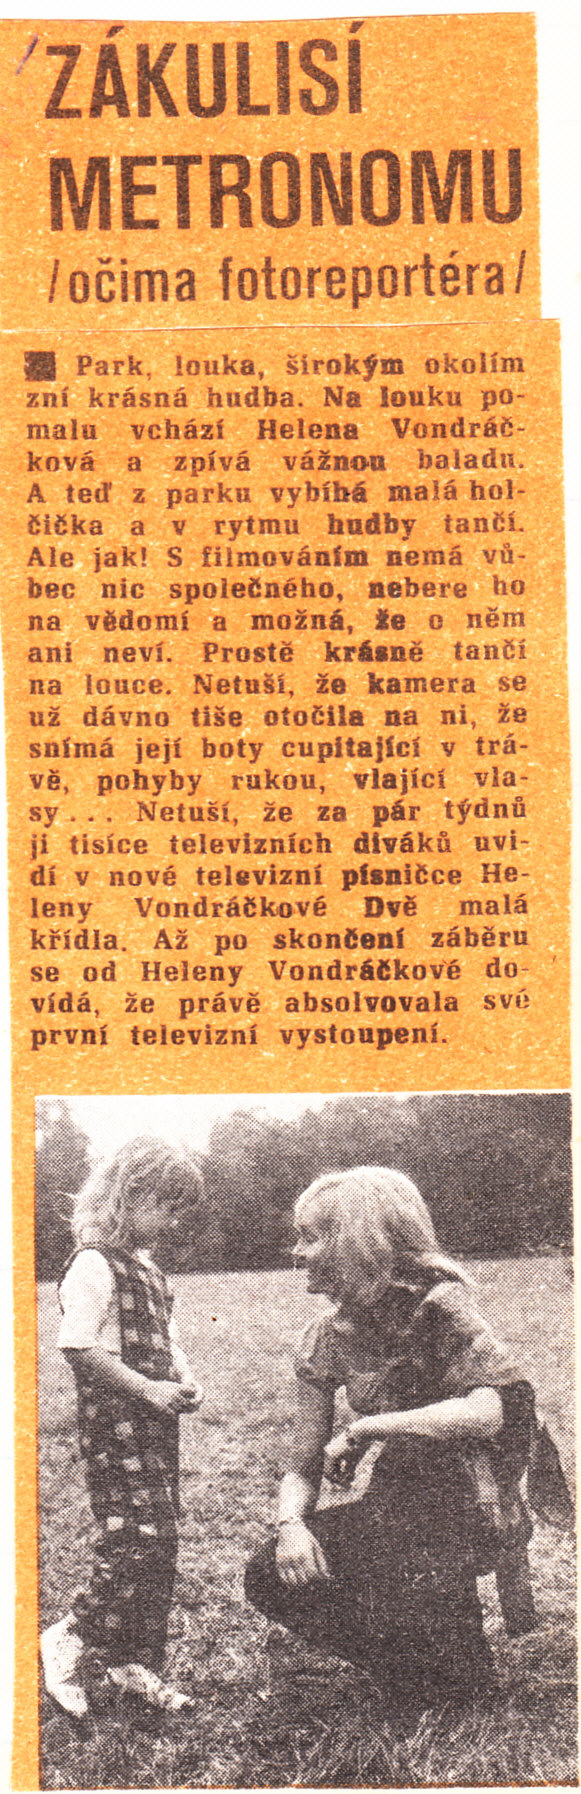 1974, Stezka, prosinec.jpg